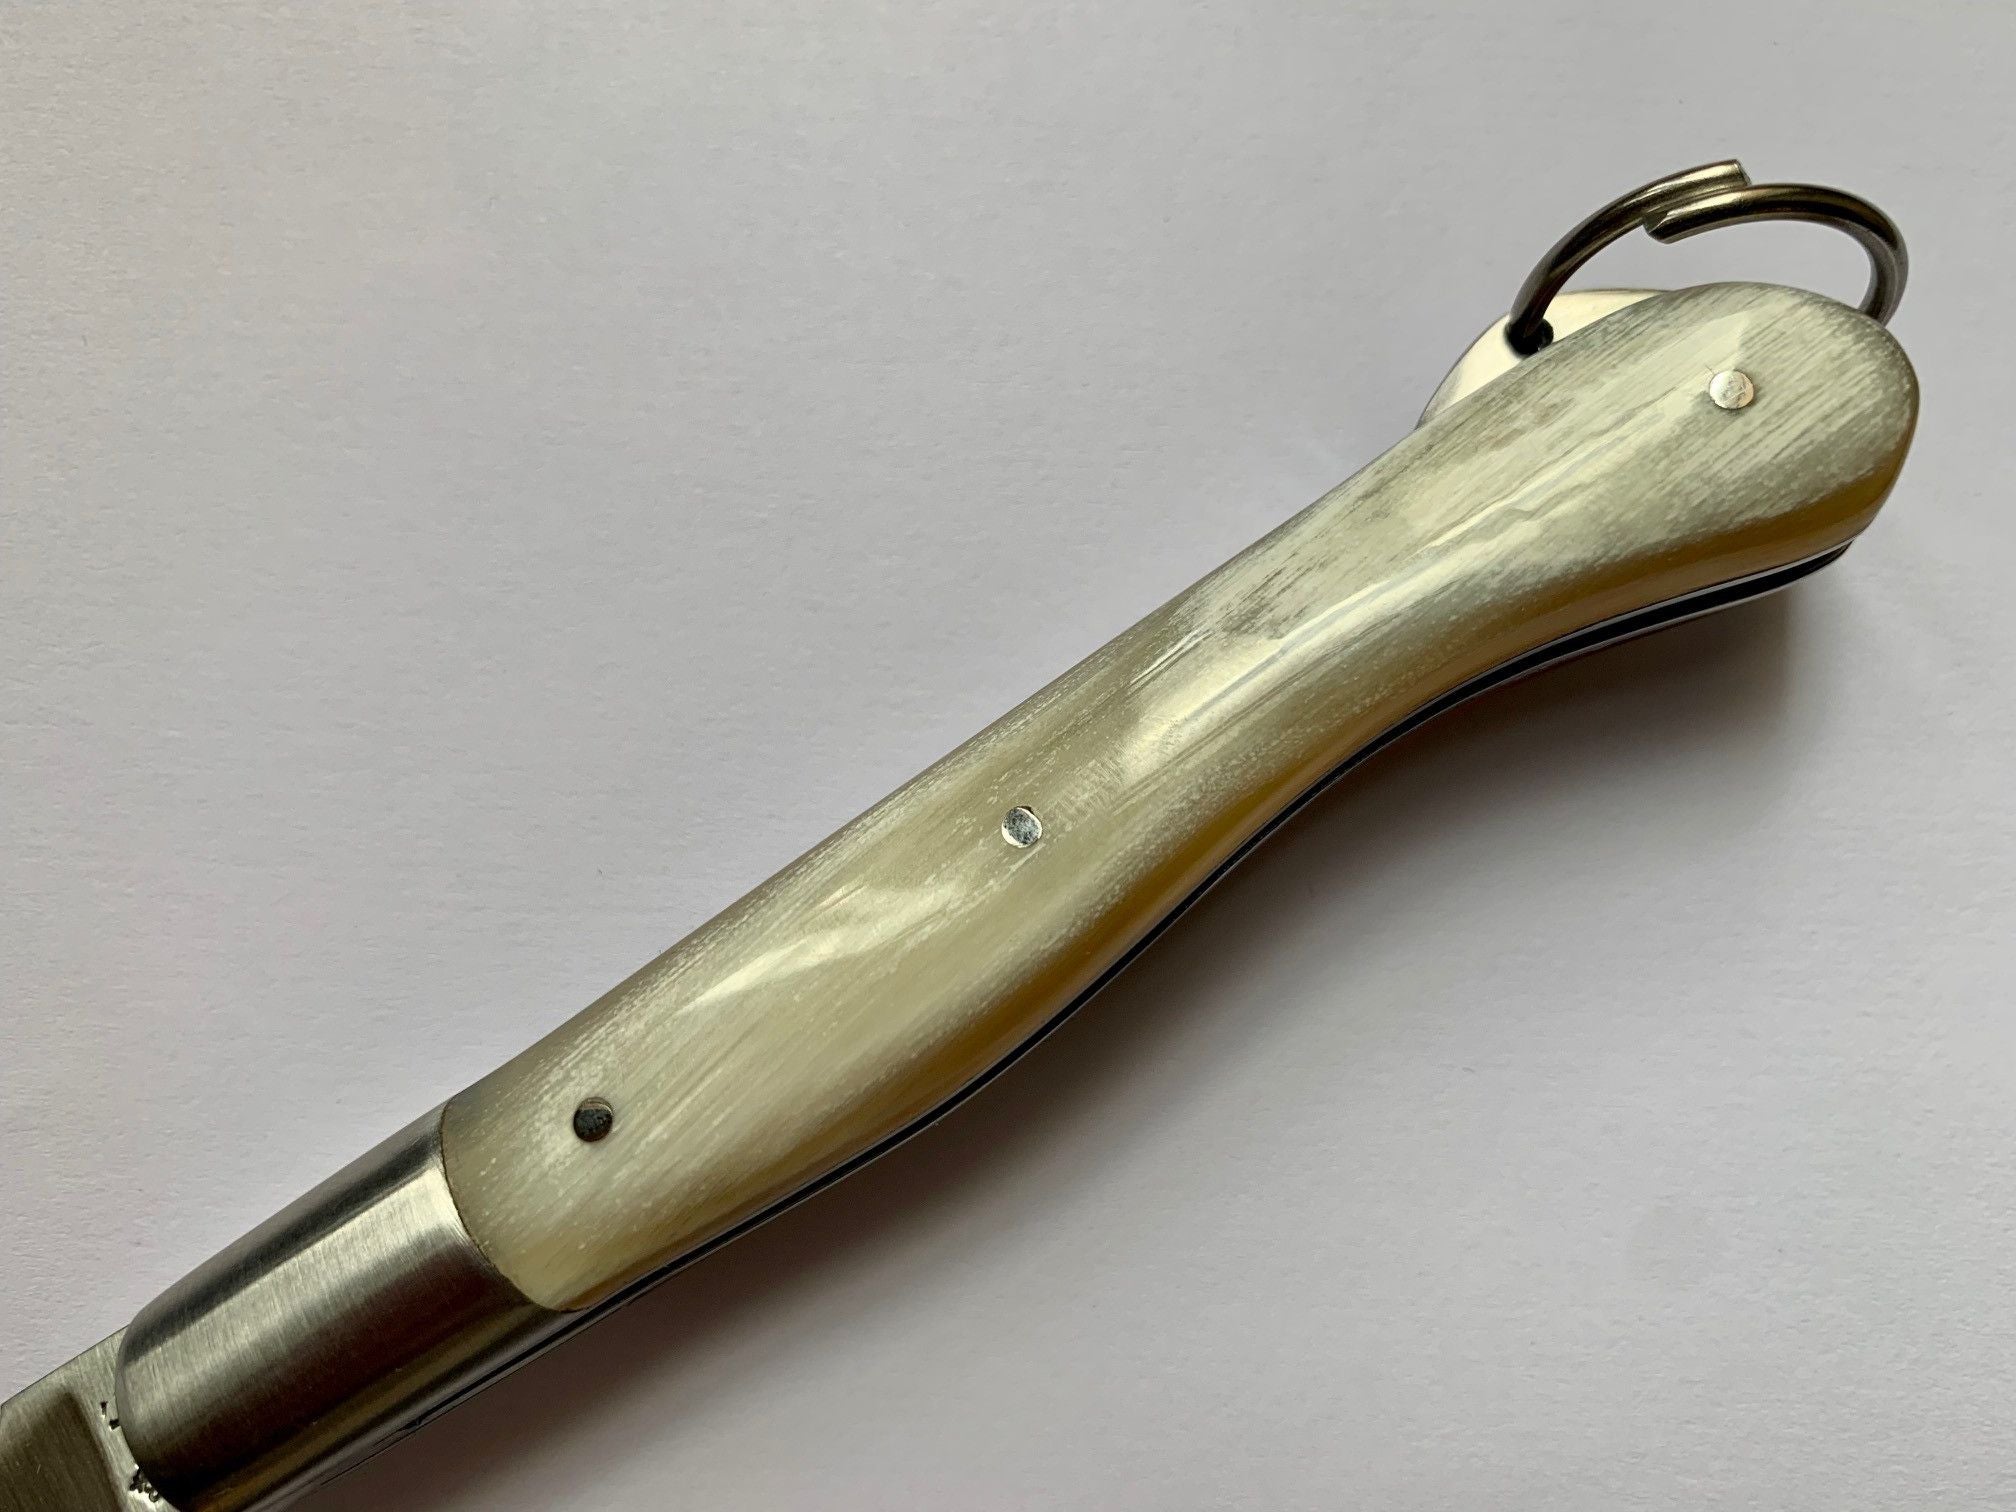 Le Salers couteau de poche par Thiers-Issard, manche pointe de corne, lame inox 10cms.